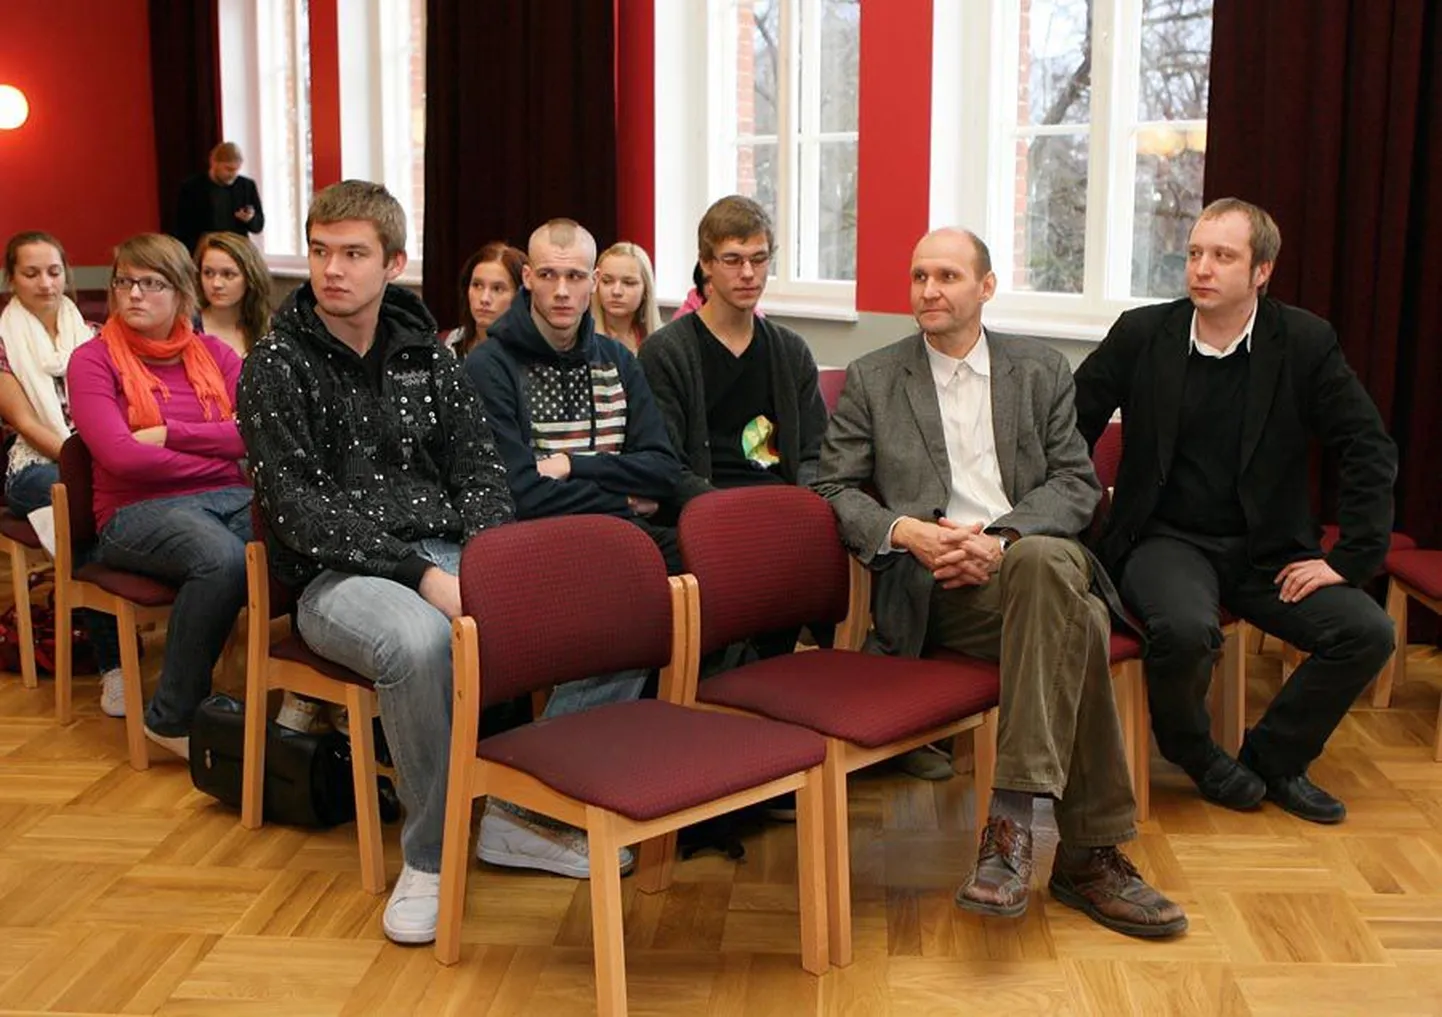 Põllumajandusminister Helir-Valdor Seeder (esireas vasakul) juhatas lühikese sõnavõtuga kodulinna kooli väitluskoolituse sisse ja kuulas huviga, kuidas õpilased maaelu teemal väitlevad.